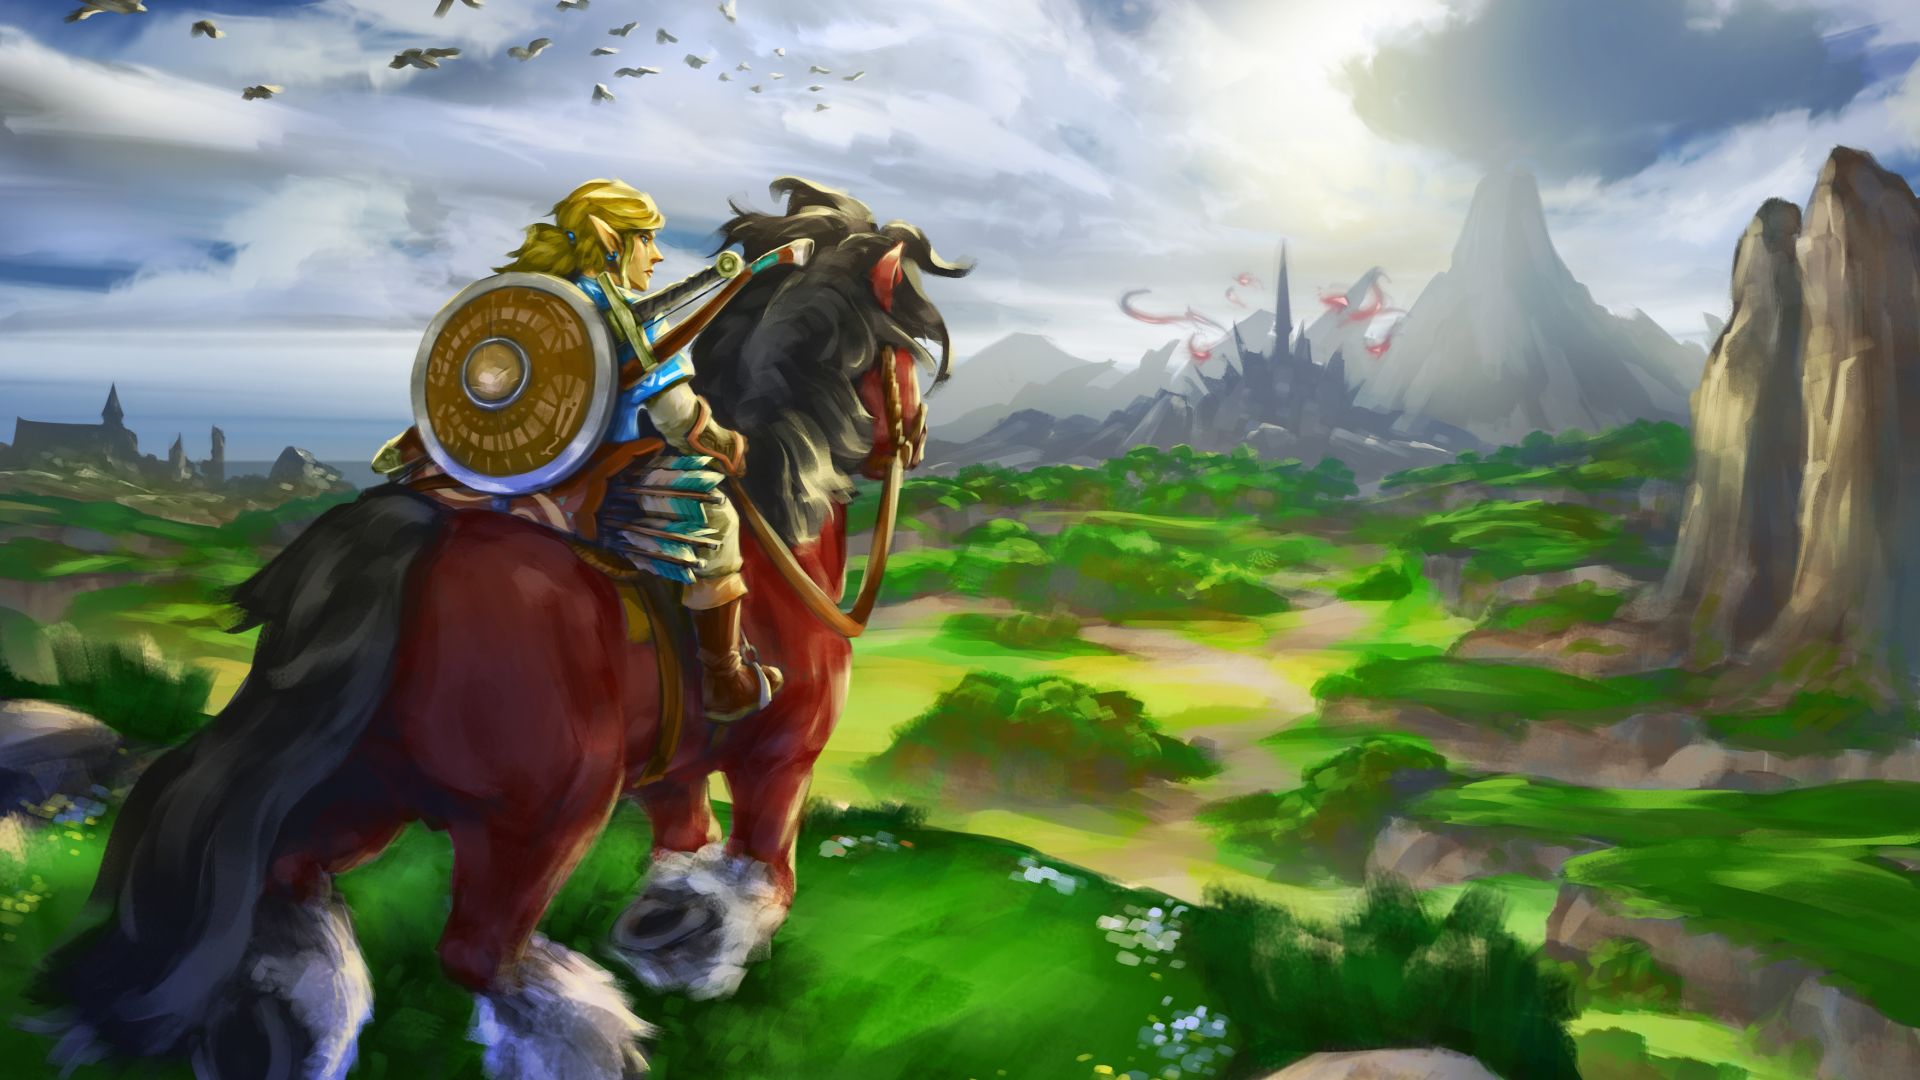 Wallpaper The Legend of Zelda: Breath of the Wild gaming, zelda, art